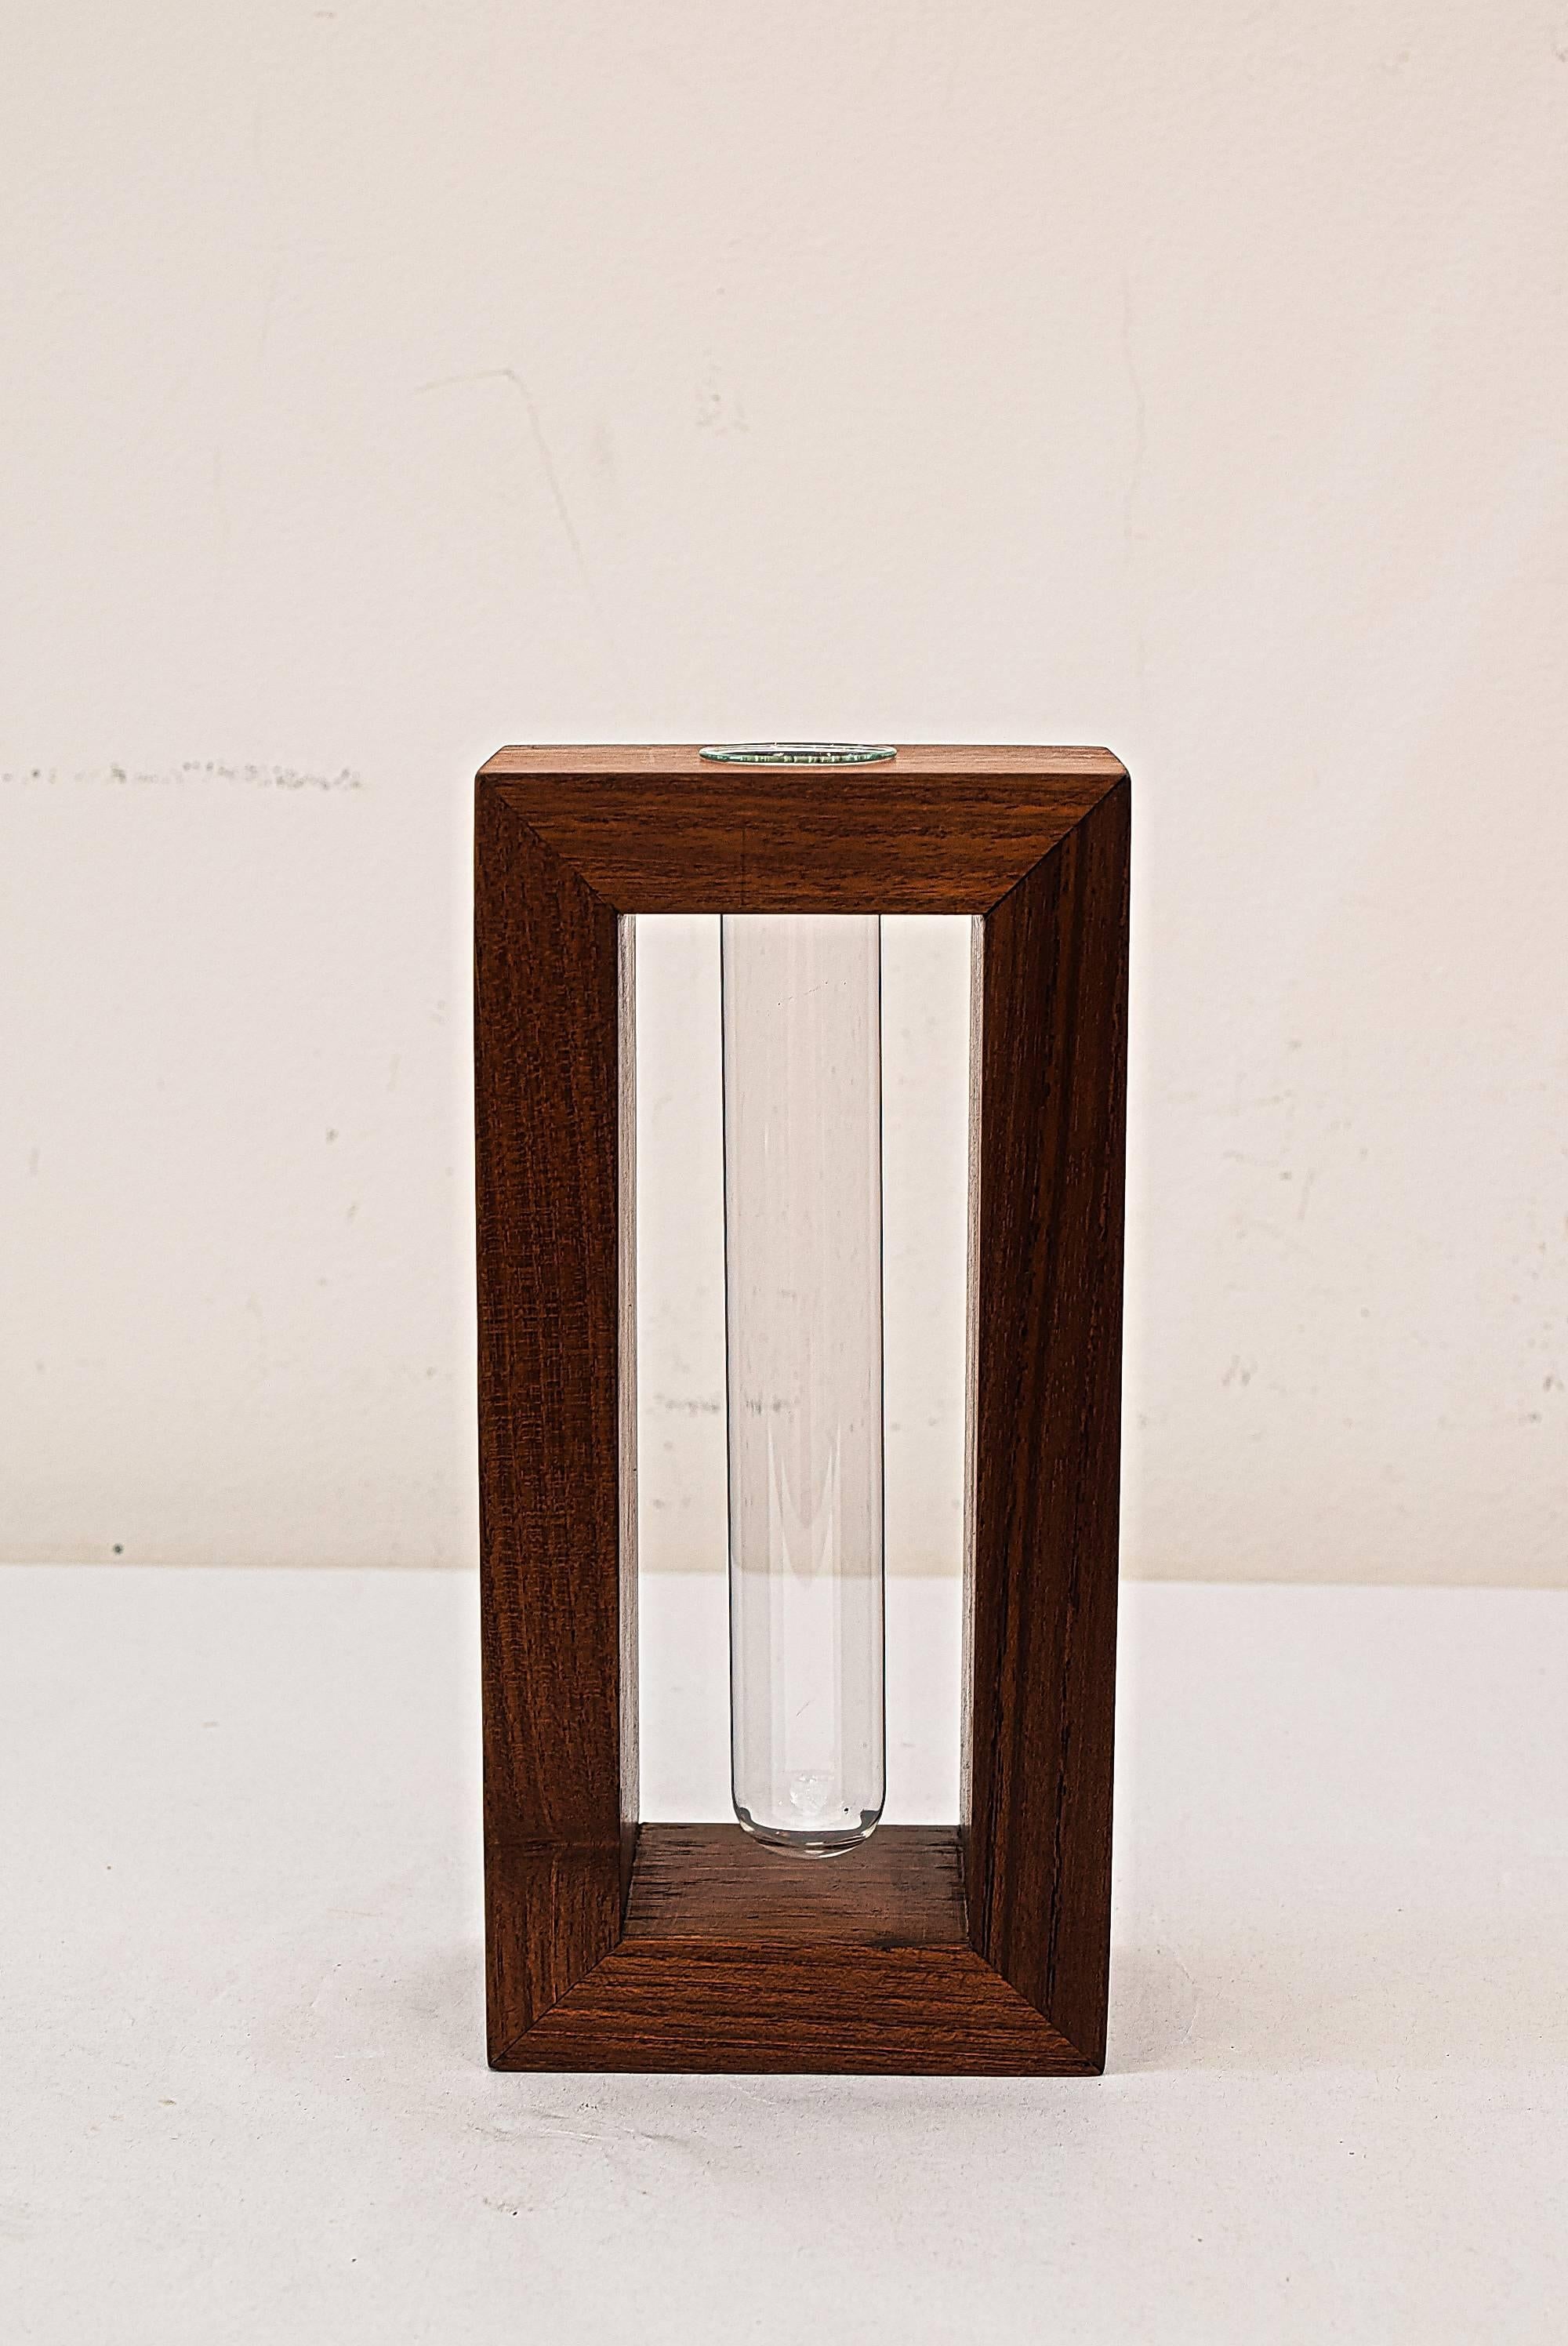 Danish teak wood vase.
Original condition.